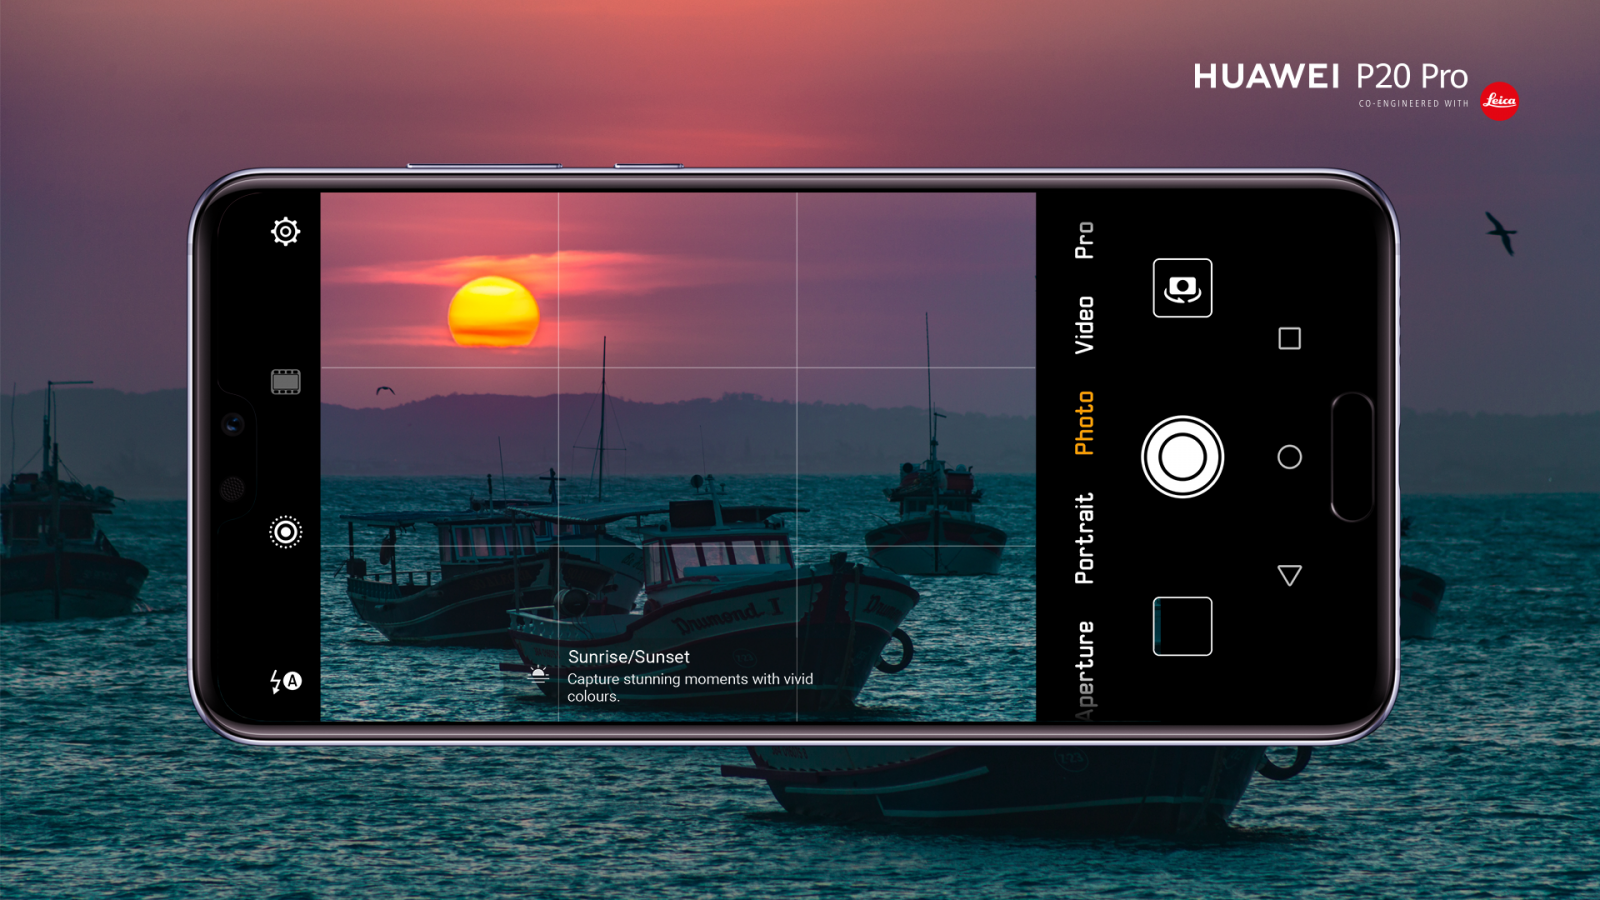 Huawei P20 Pro: Trojitý fotoaparát Leica v číslach